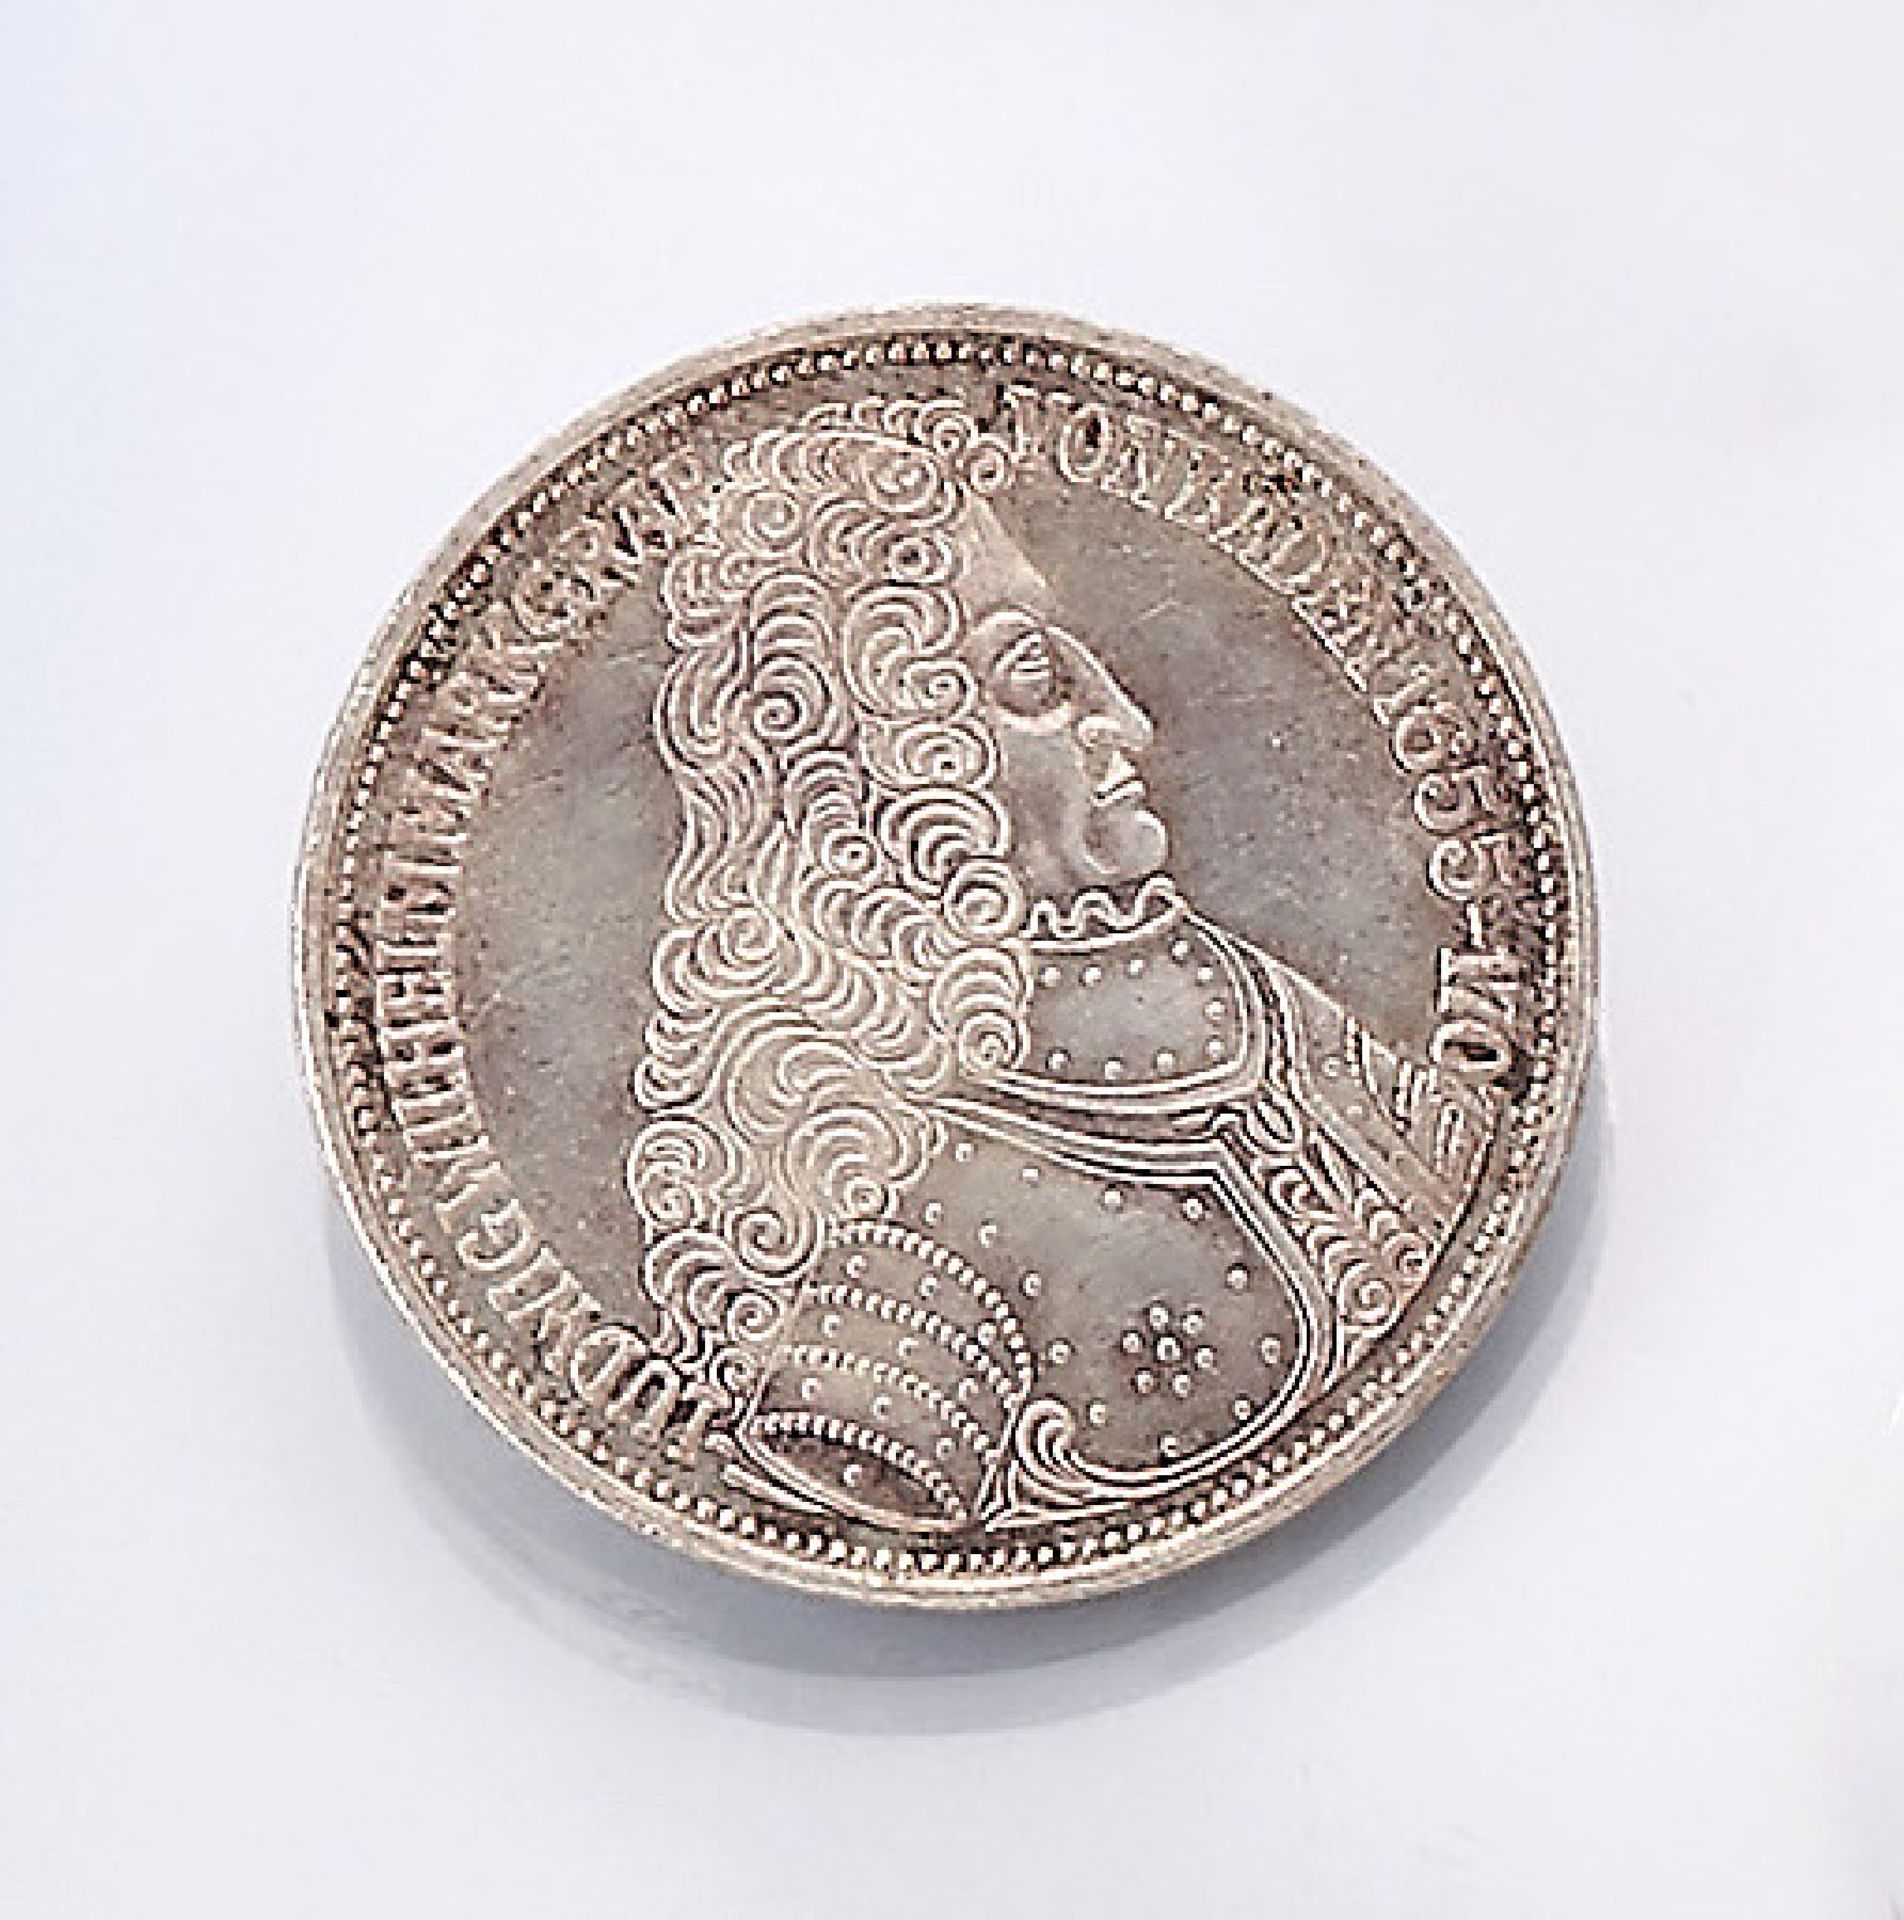 Silbermünze, 5 Mark, Deutschland, 1955, Ludwig Wilhelm Markgraf von Baden, Prägemarke GSilver